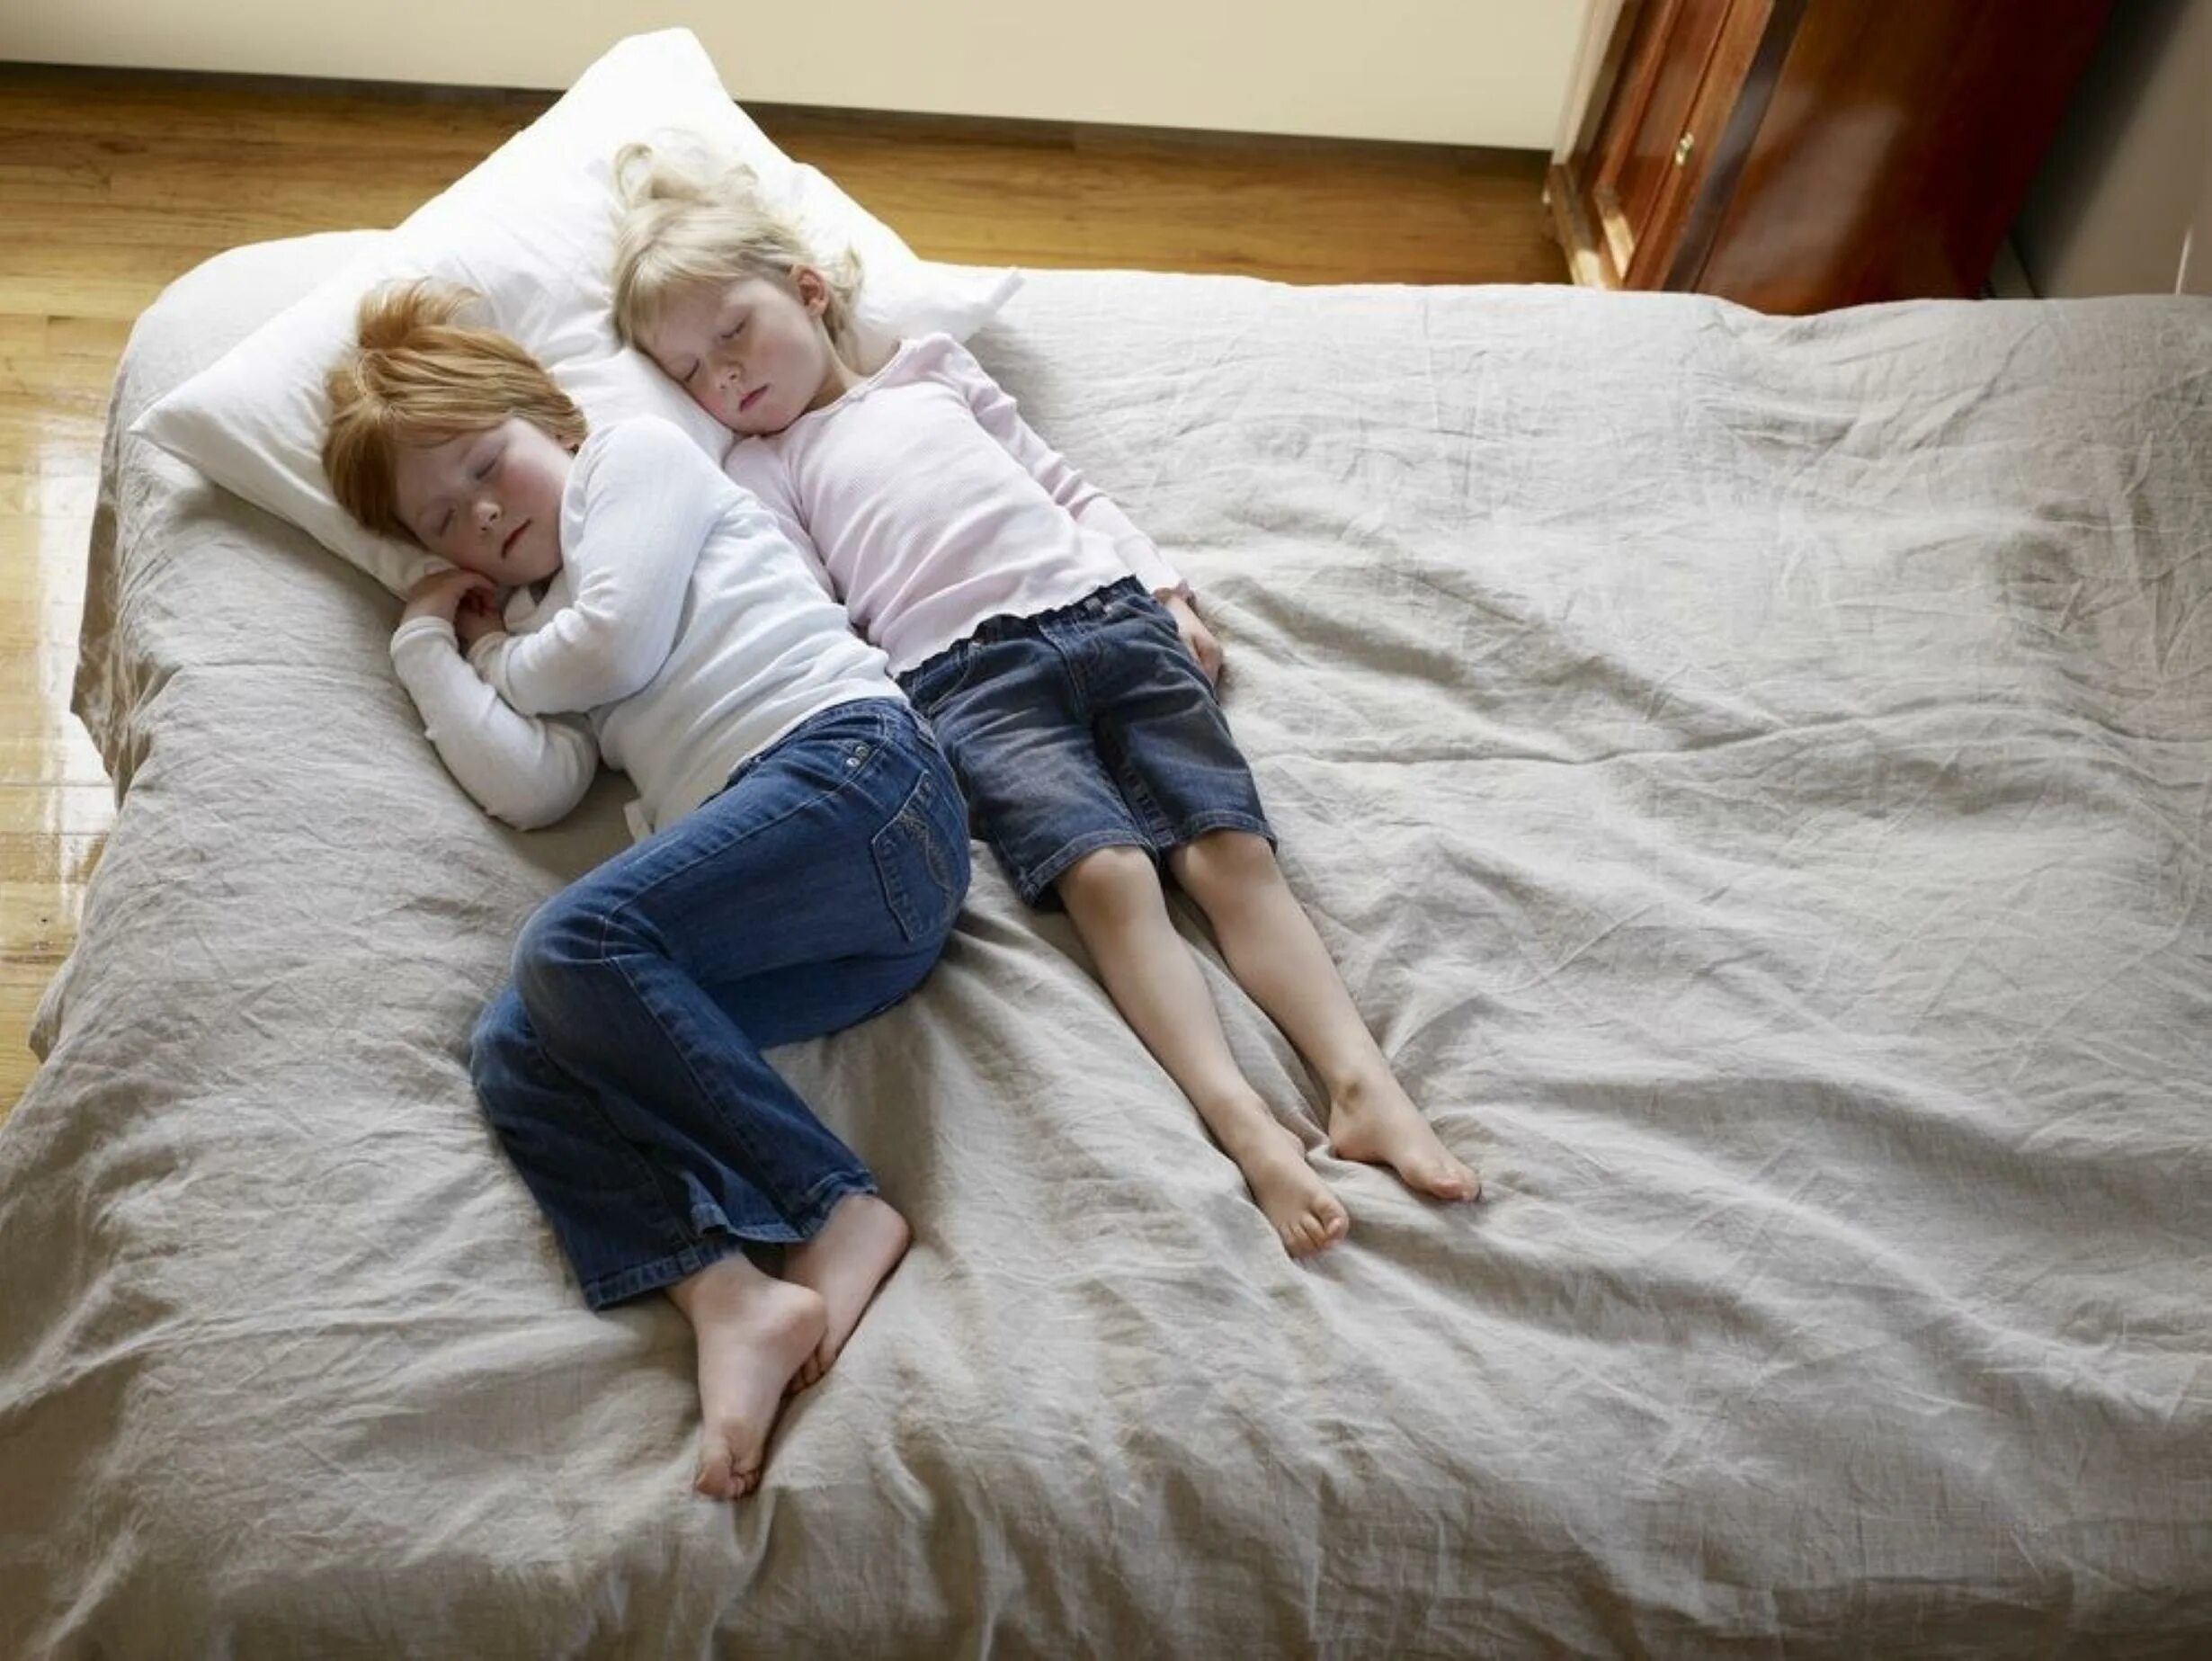 Связанные дети на кровати. Ребенок лежит на кровати. Спящие сестры.